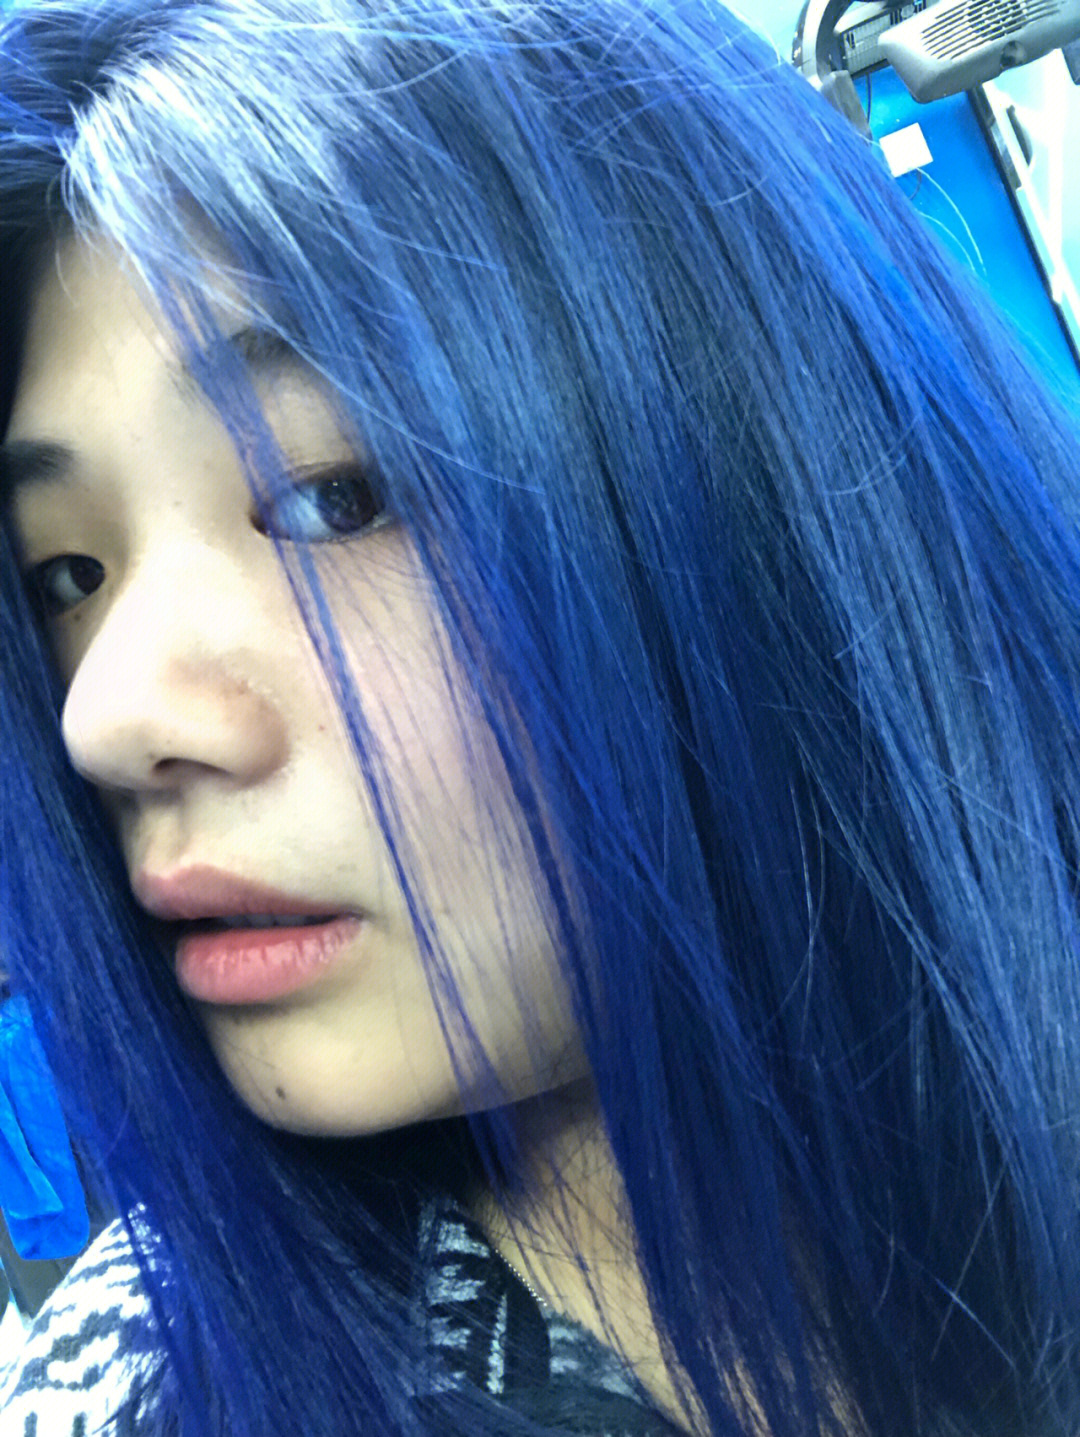 分享一个夏季超级显白的蓝色染发